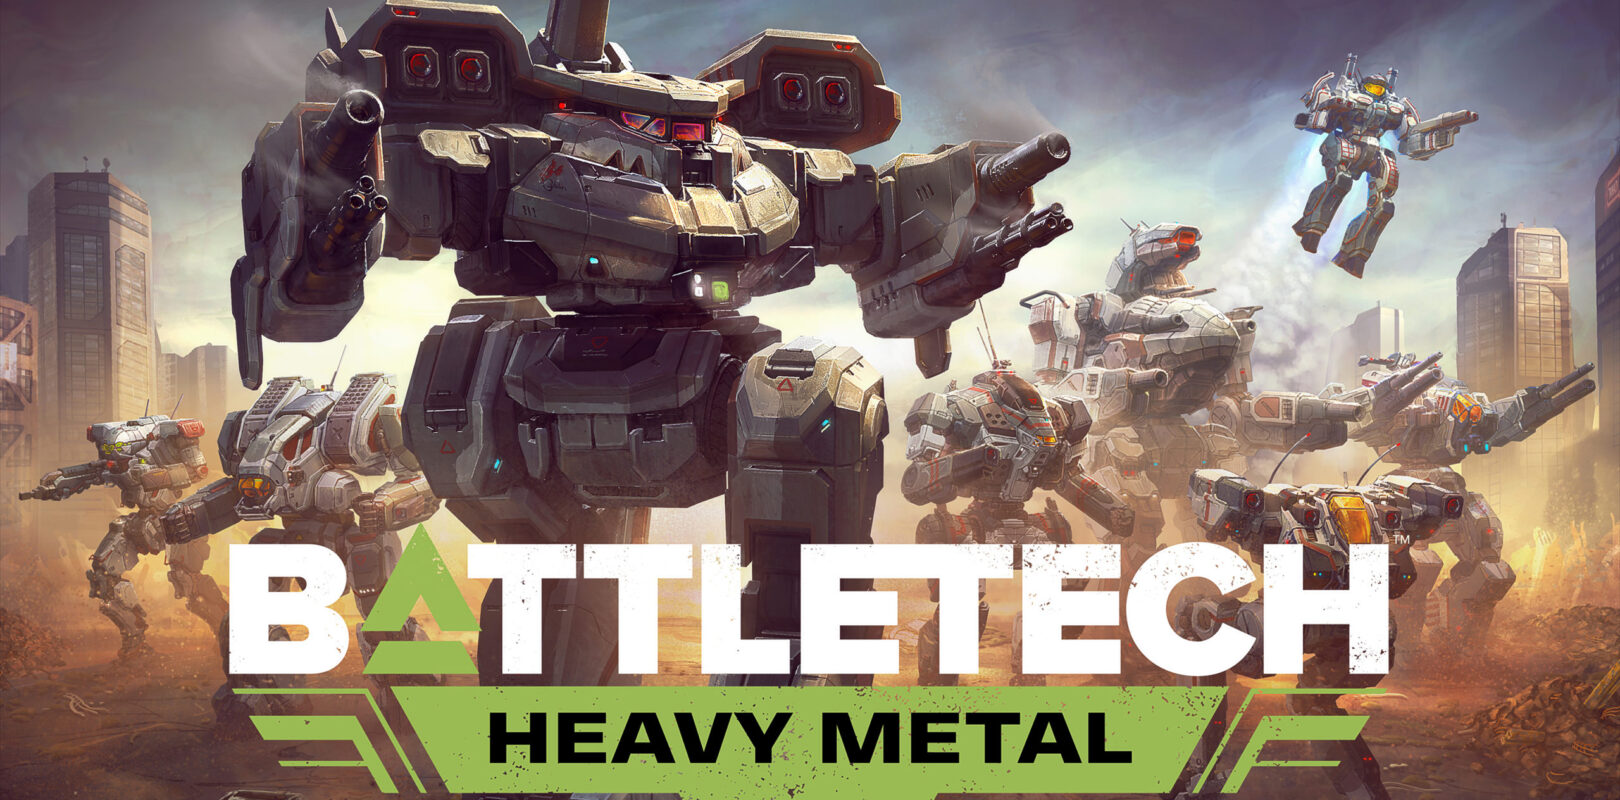 battletech heavy metal embargo